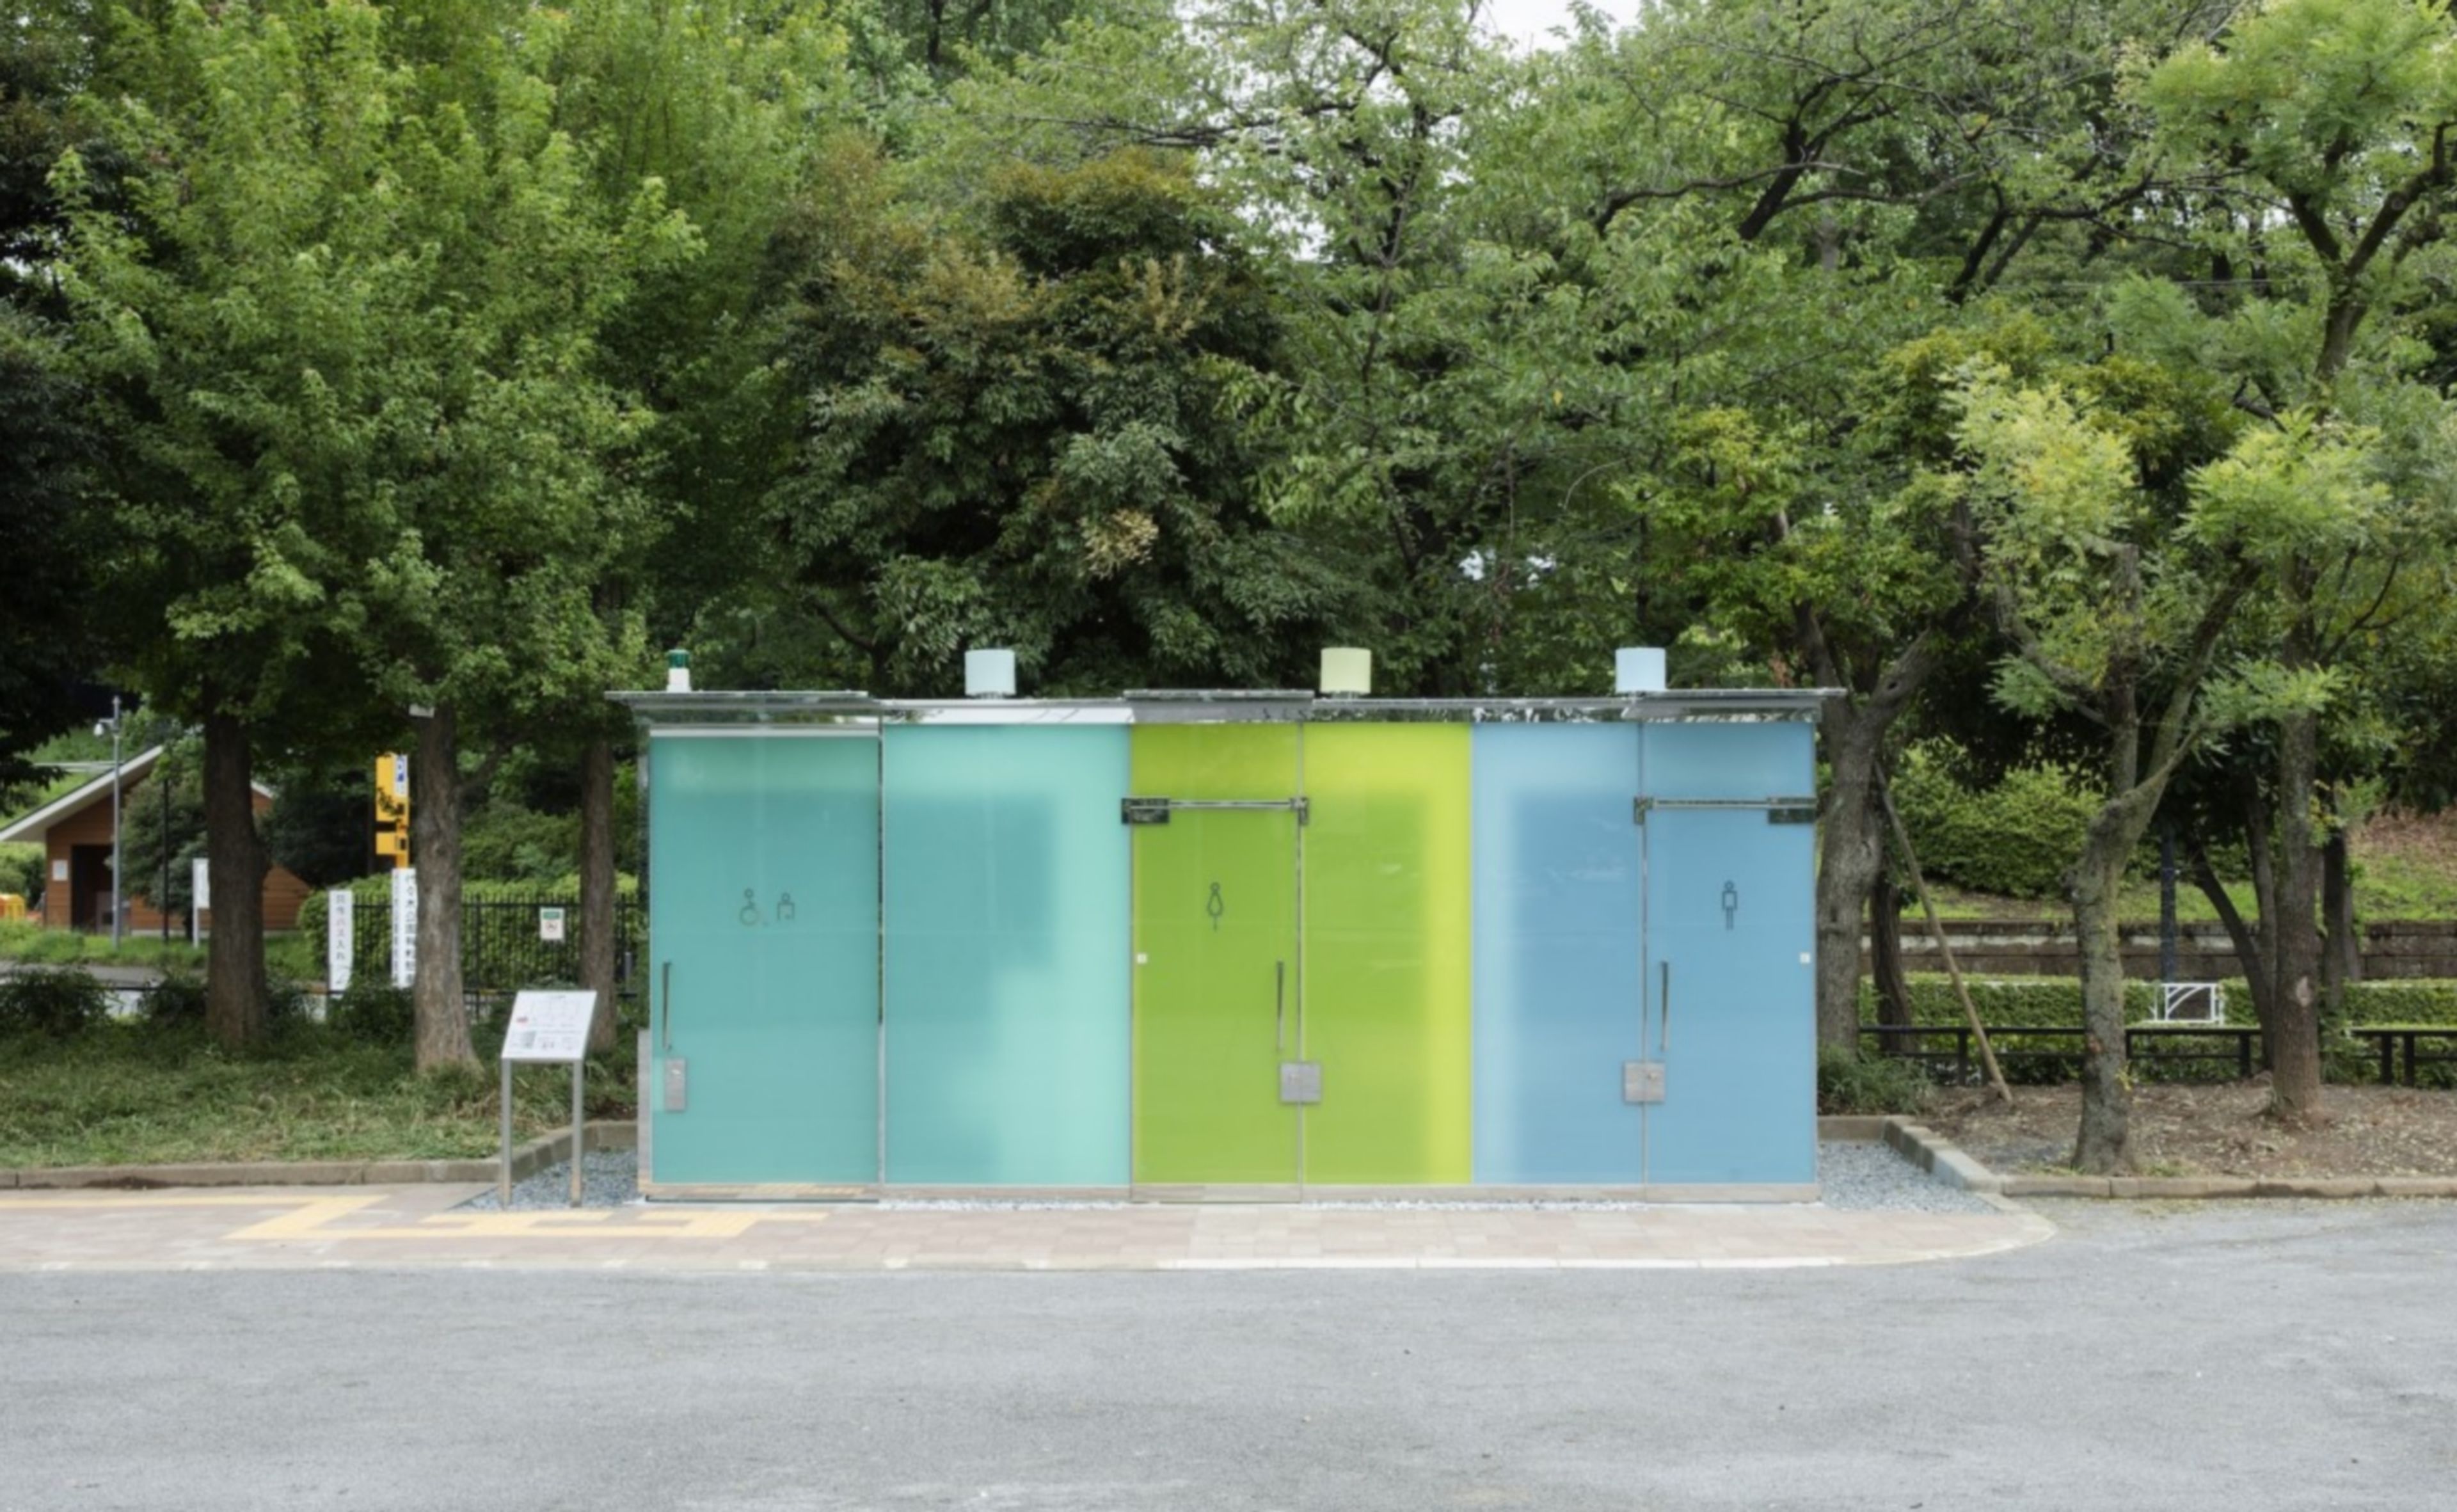 En Japón han construido urinarios públicos con paredes transparentes... pero tiene truco